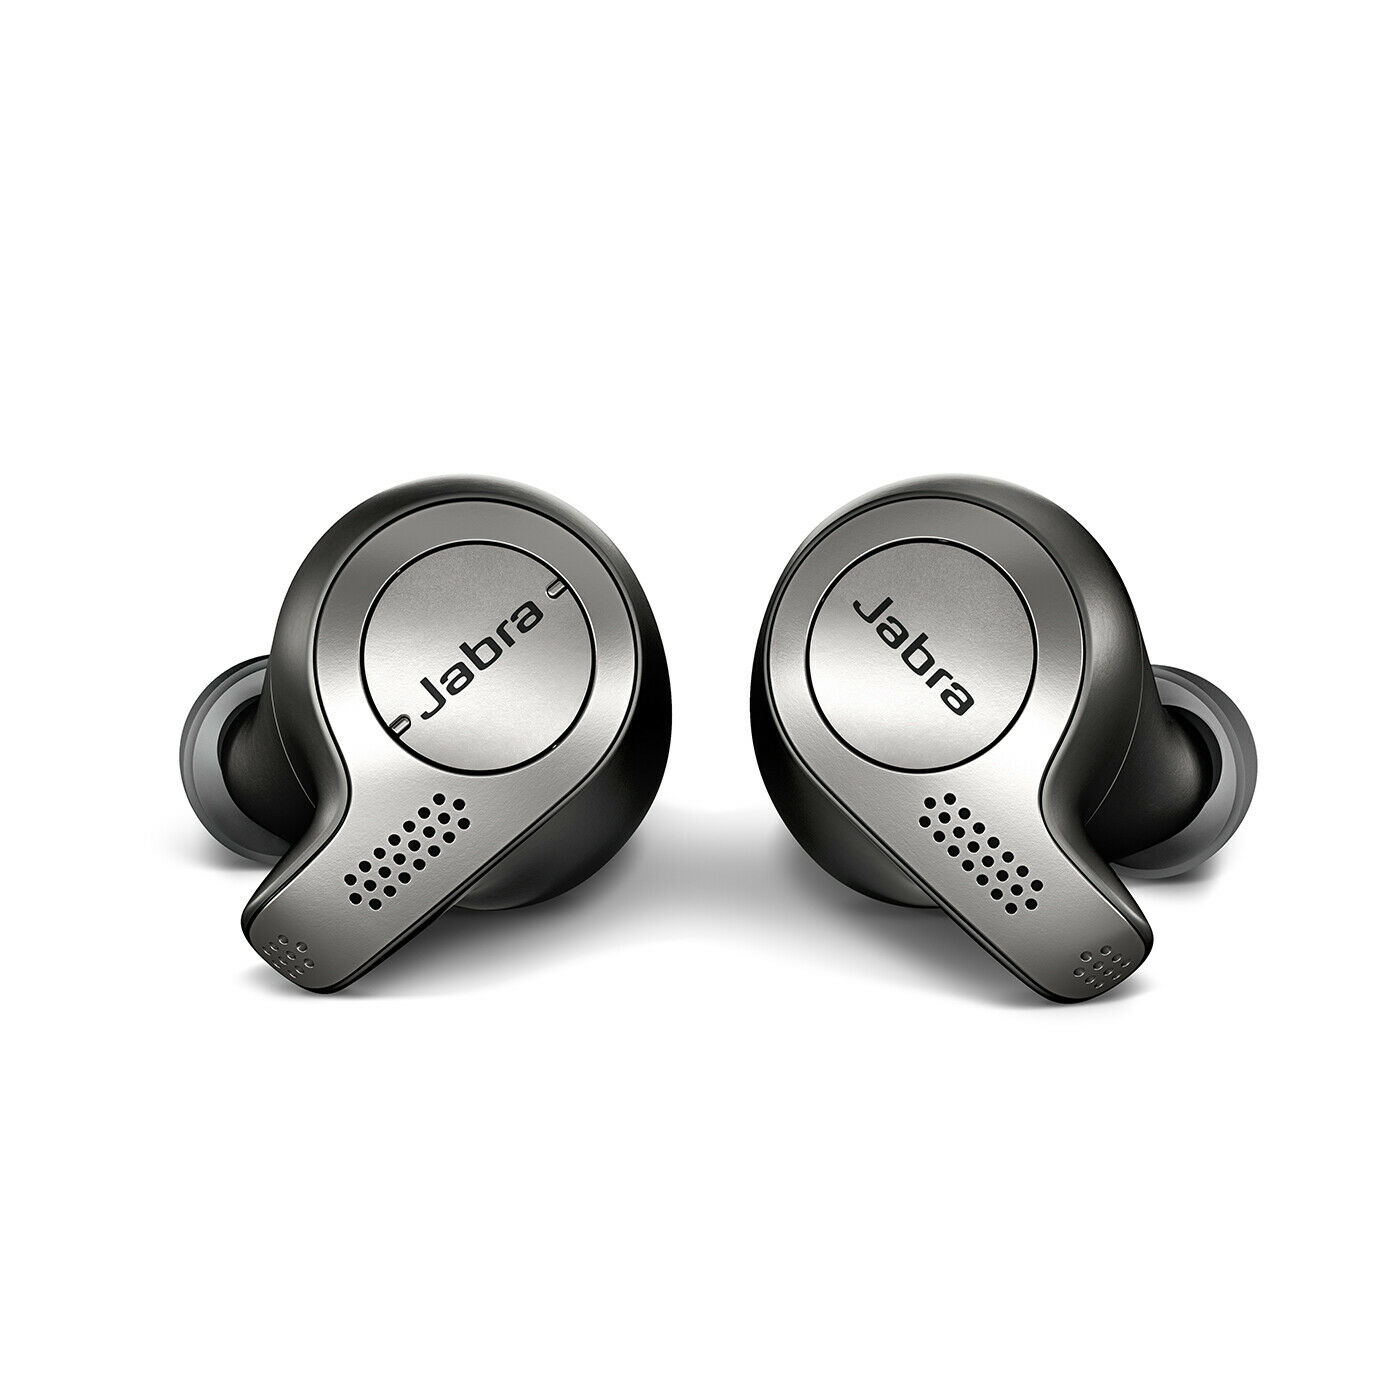 Bild zu True Wireless Bluetooth In-Ear Kopfhörer Jabra Elite 65t für 44,99€ (Vergleich: 107,30€)